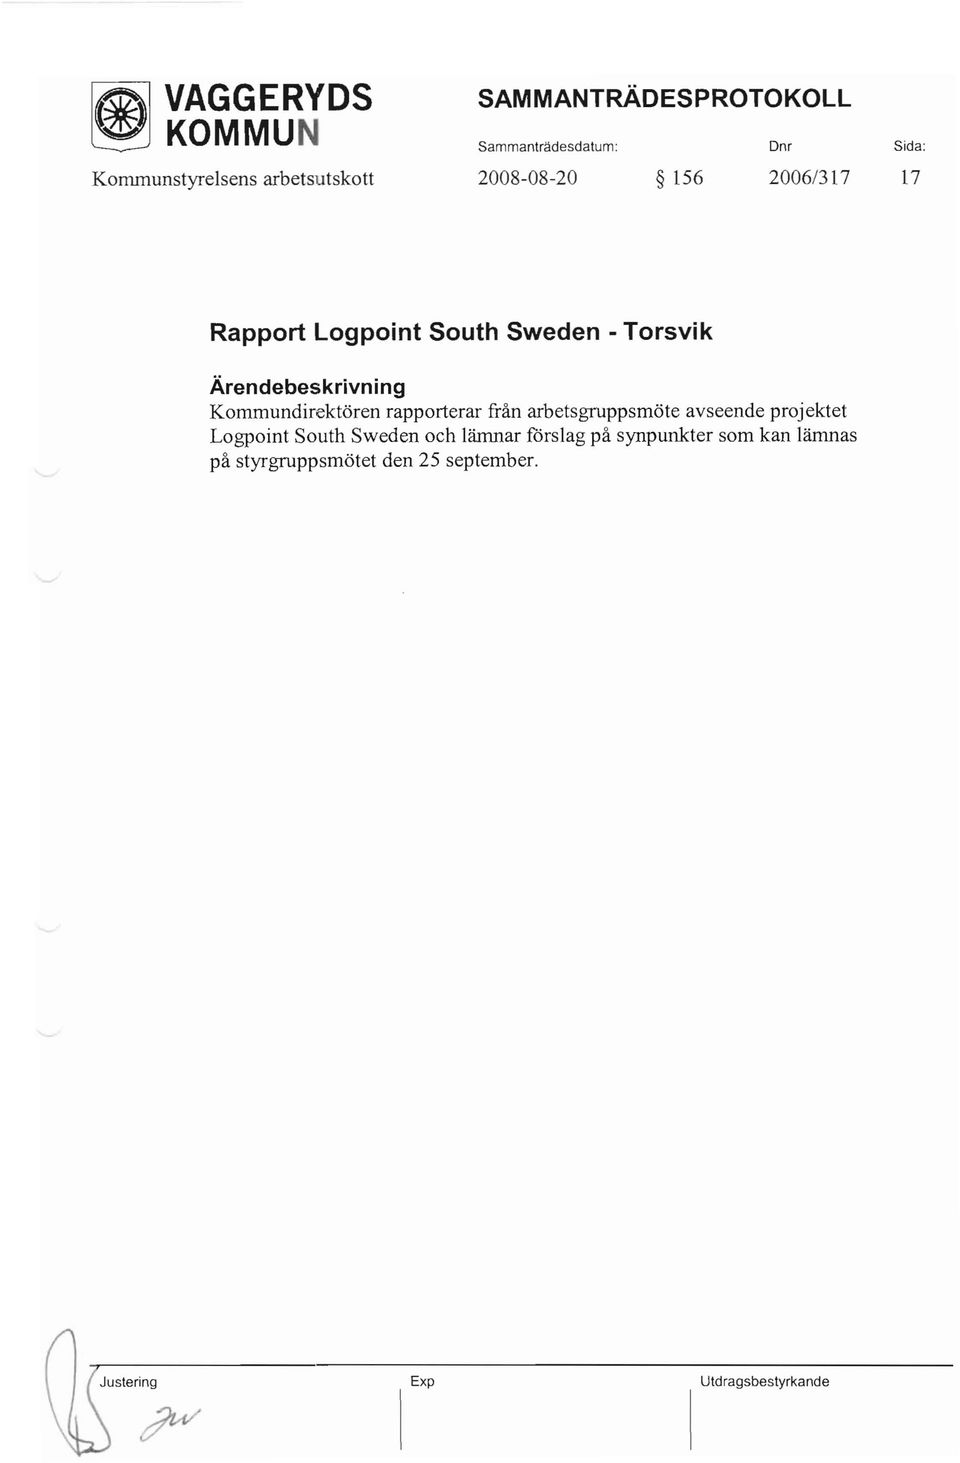 Kommundirektören rapporterar från arbetsgruppsmöte avseende projektet Logpoint